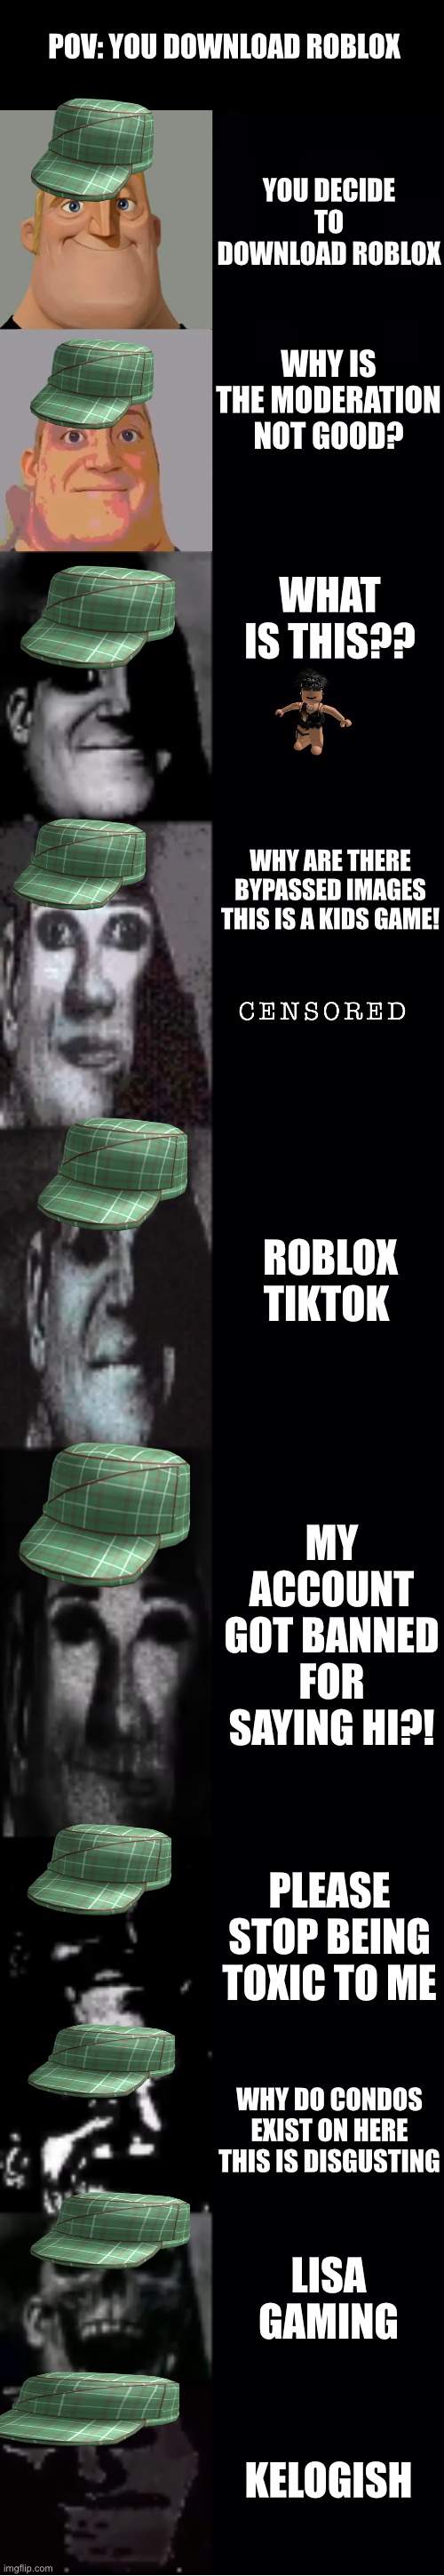 cara do roblox meme｜Pesquisa do TikTok